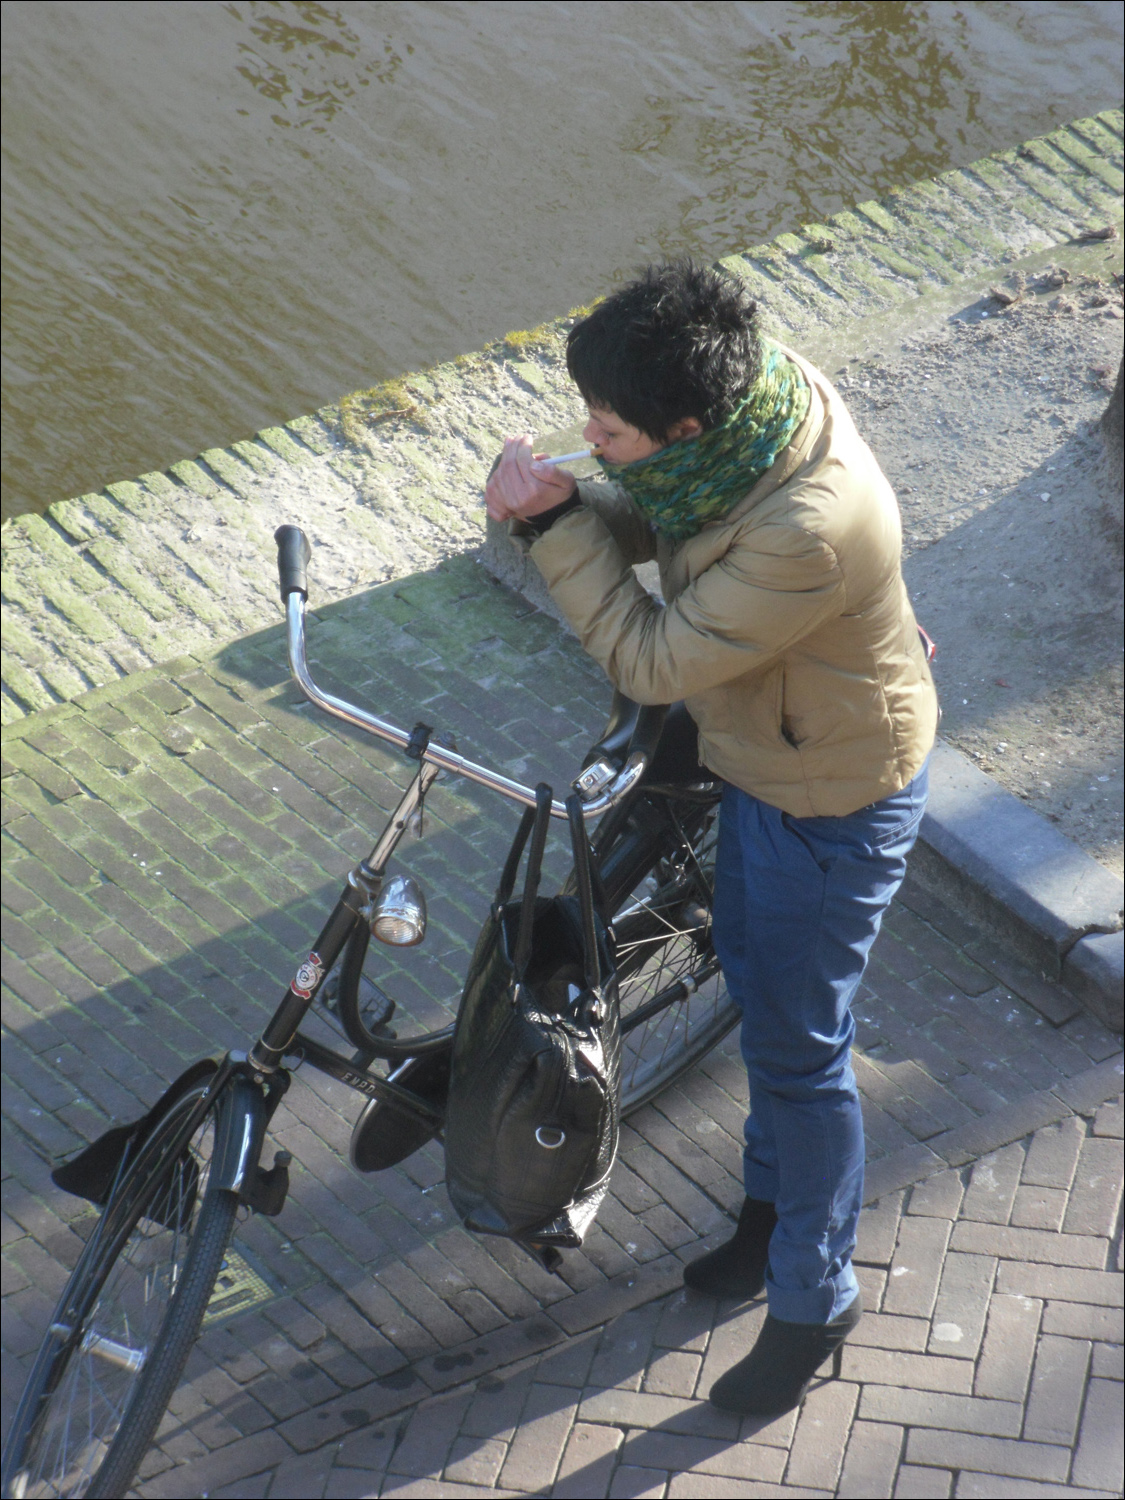 Lady bicyclist near canal